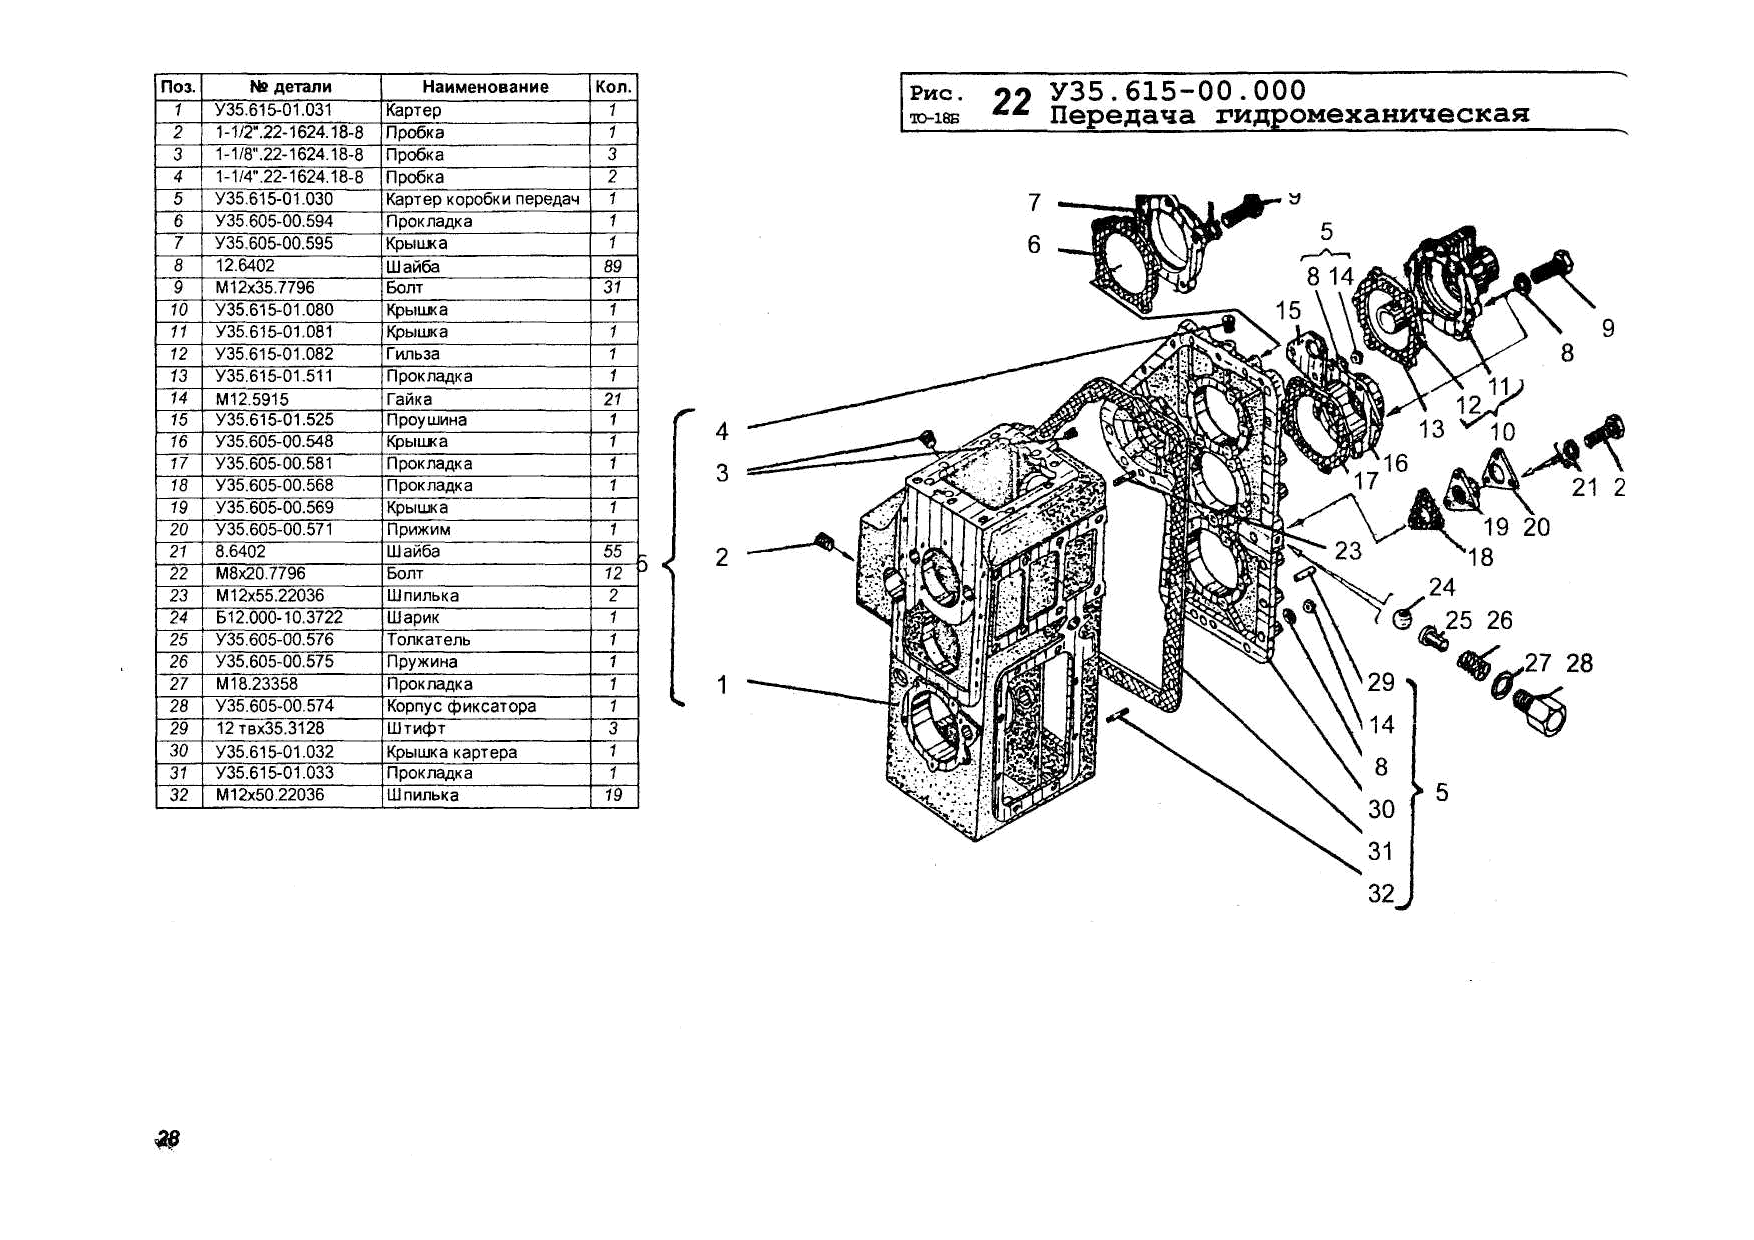 Амкодор 211 технические характеристики и оборудование